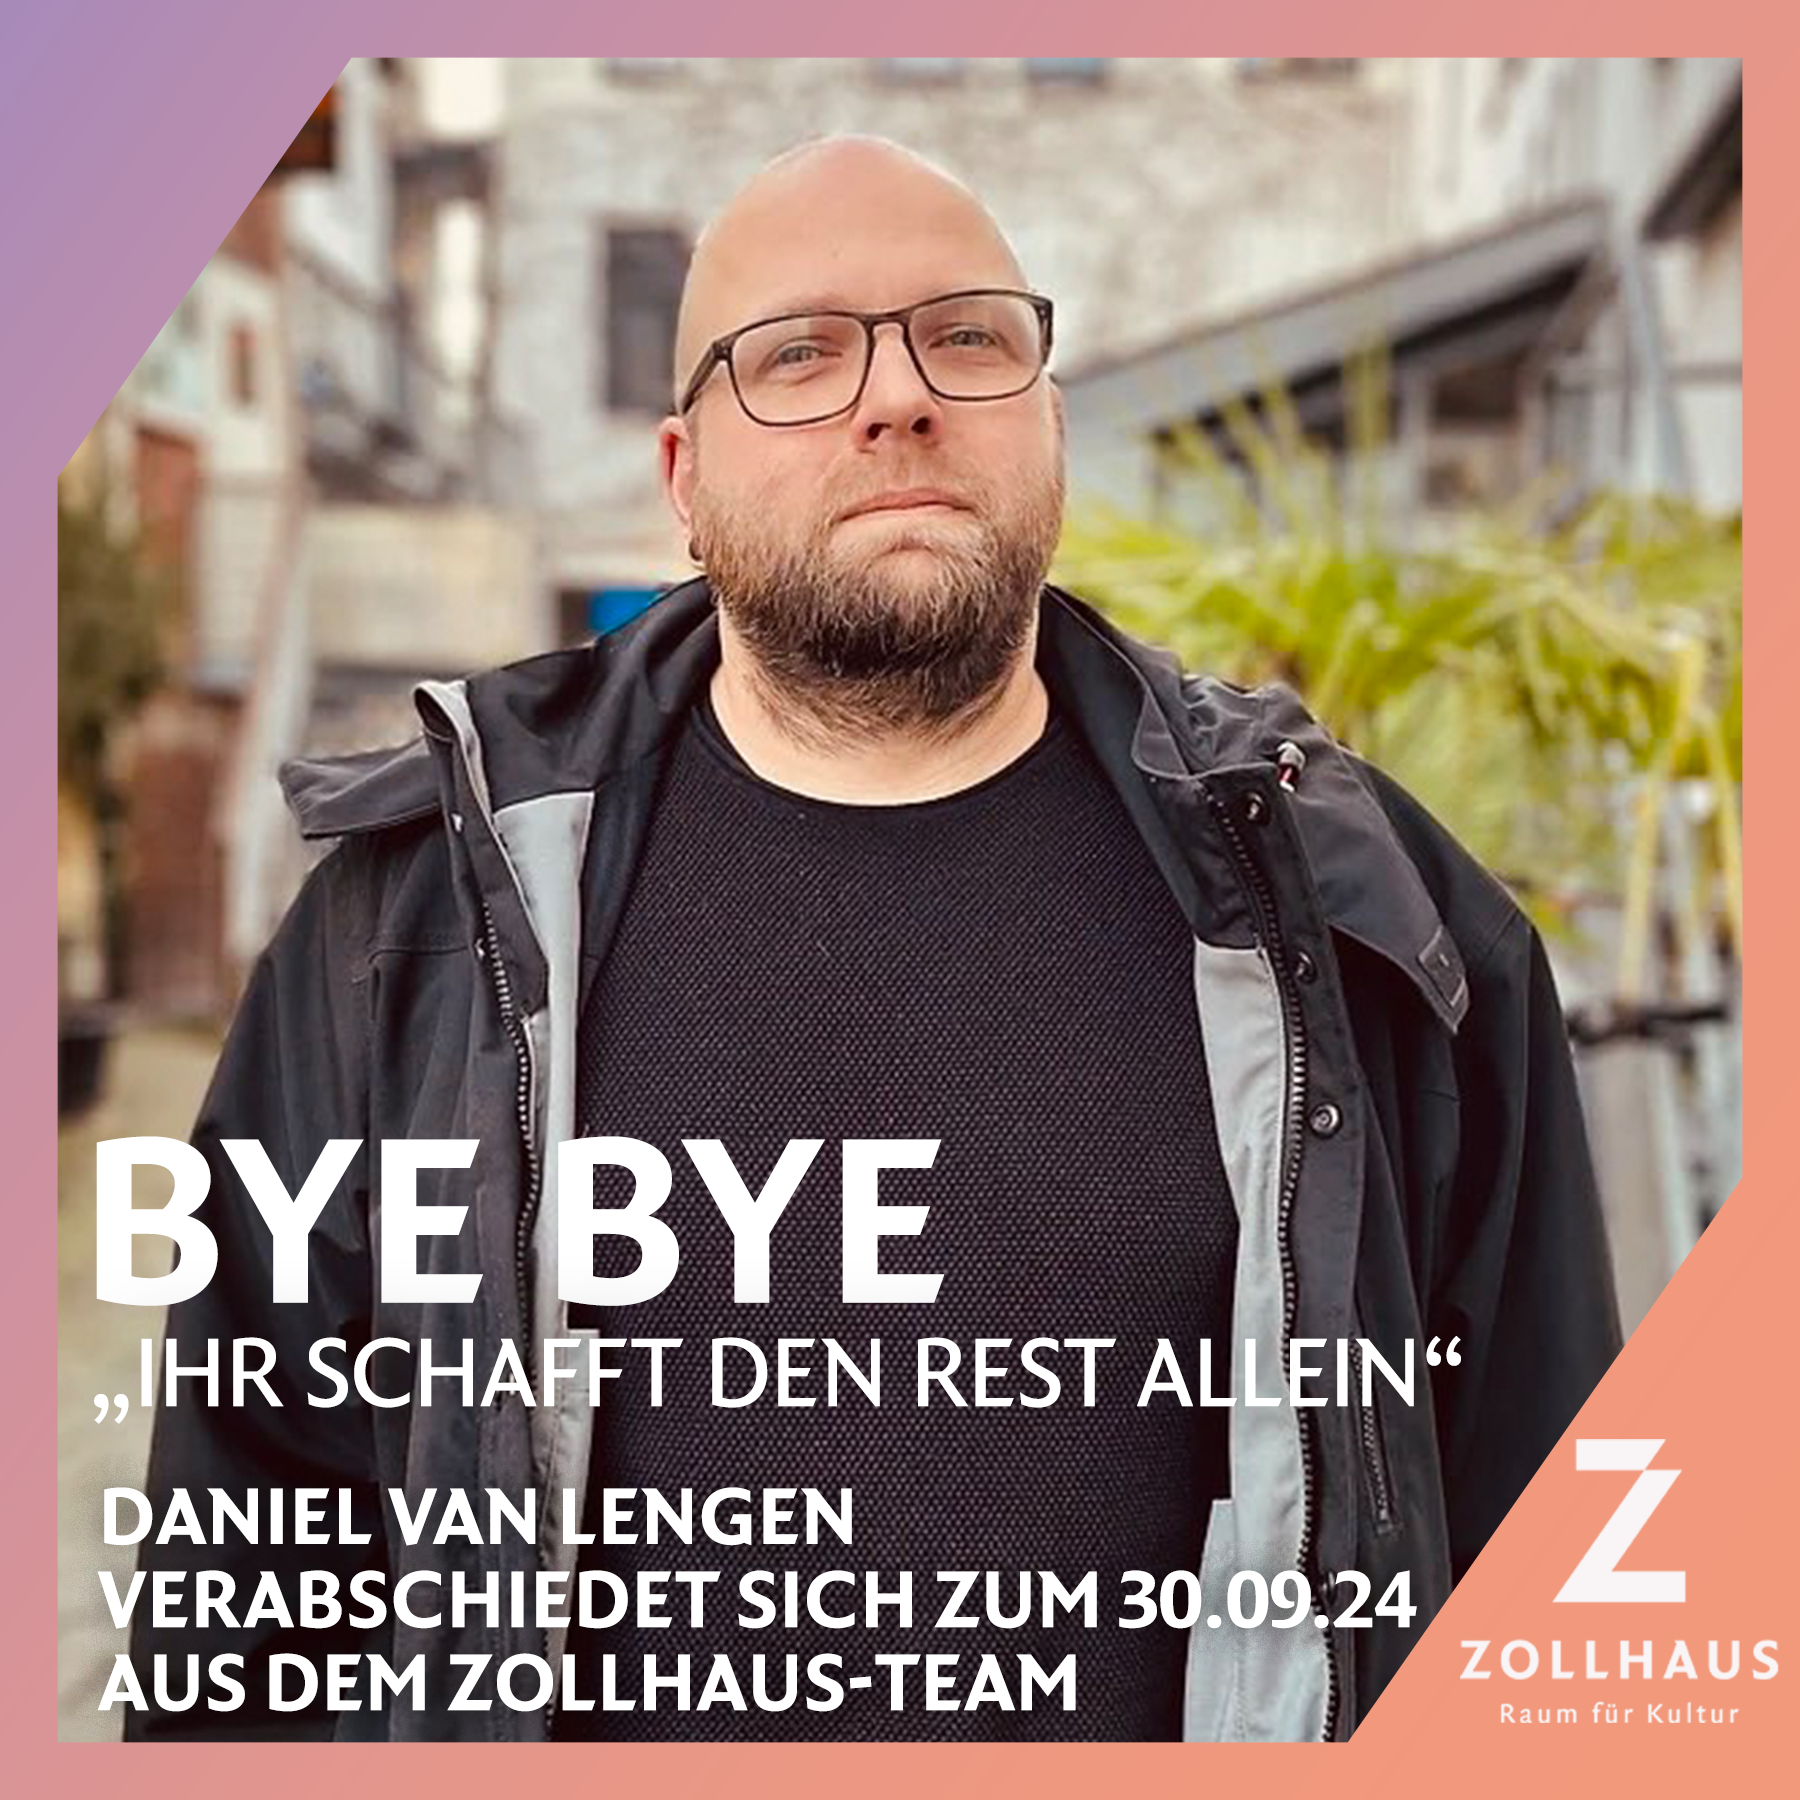 BYE BYE – Daniel van Lengen verabschiedet sich zum 30.09. aus dem Zollhaus-Team